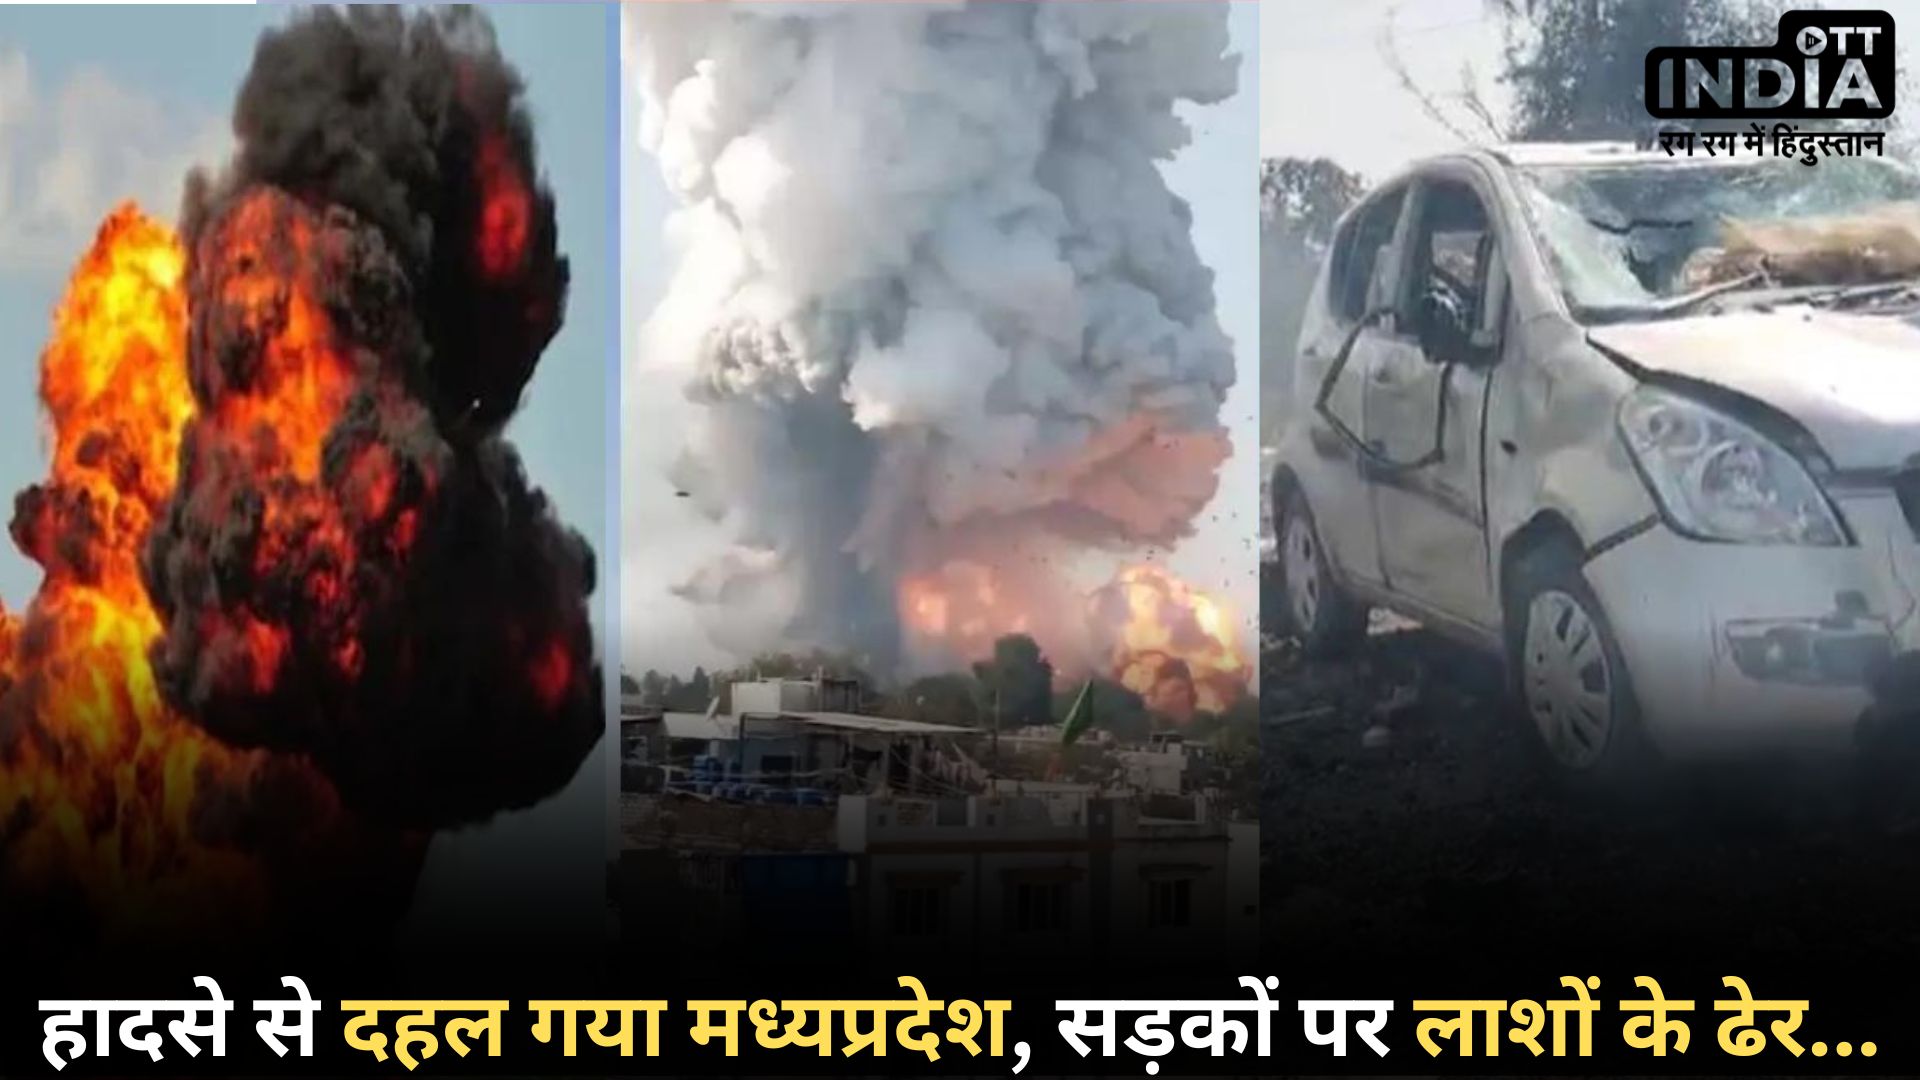 #MadhyaPradesh Harda: पटाखा फैक्ट्री में हादसा, 11 की मौत, 200 से ज्यादा घायल